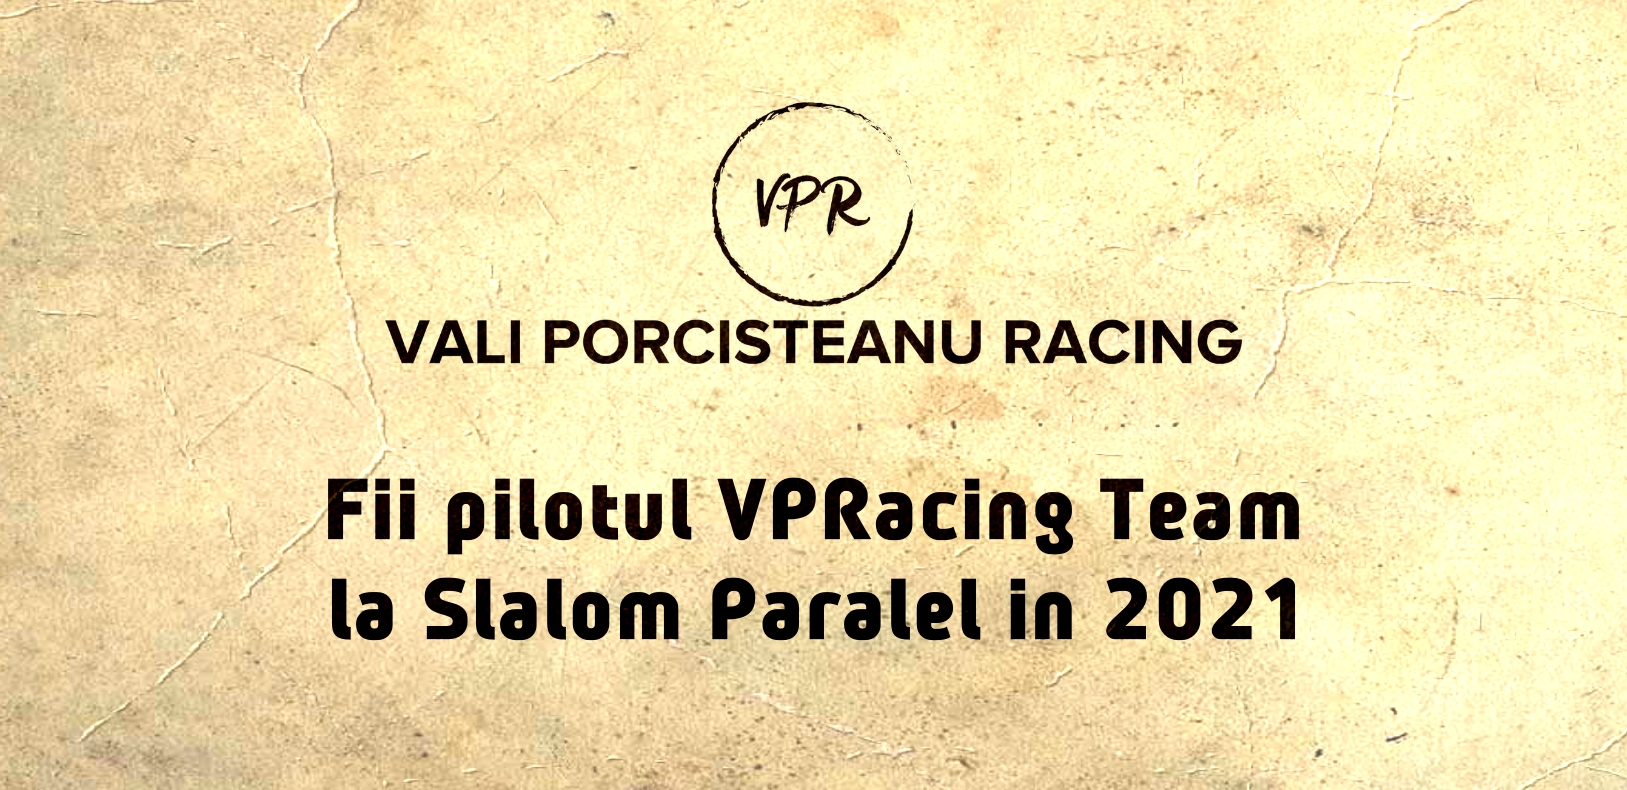 Fii pilotul VPRacing #team la Slalom Paralel în 2021!